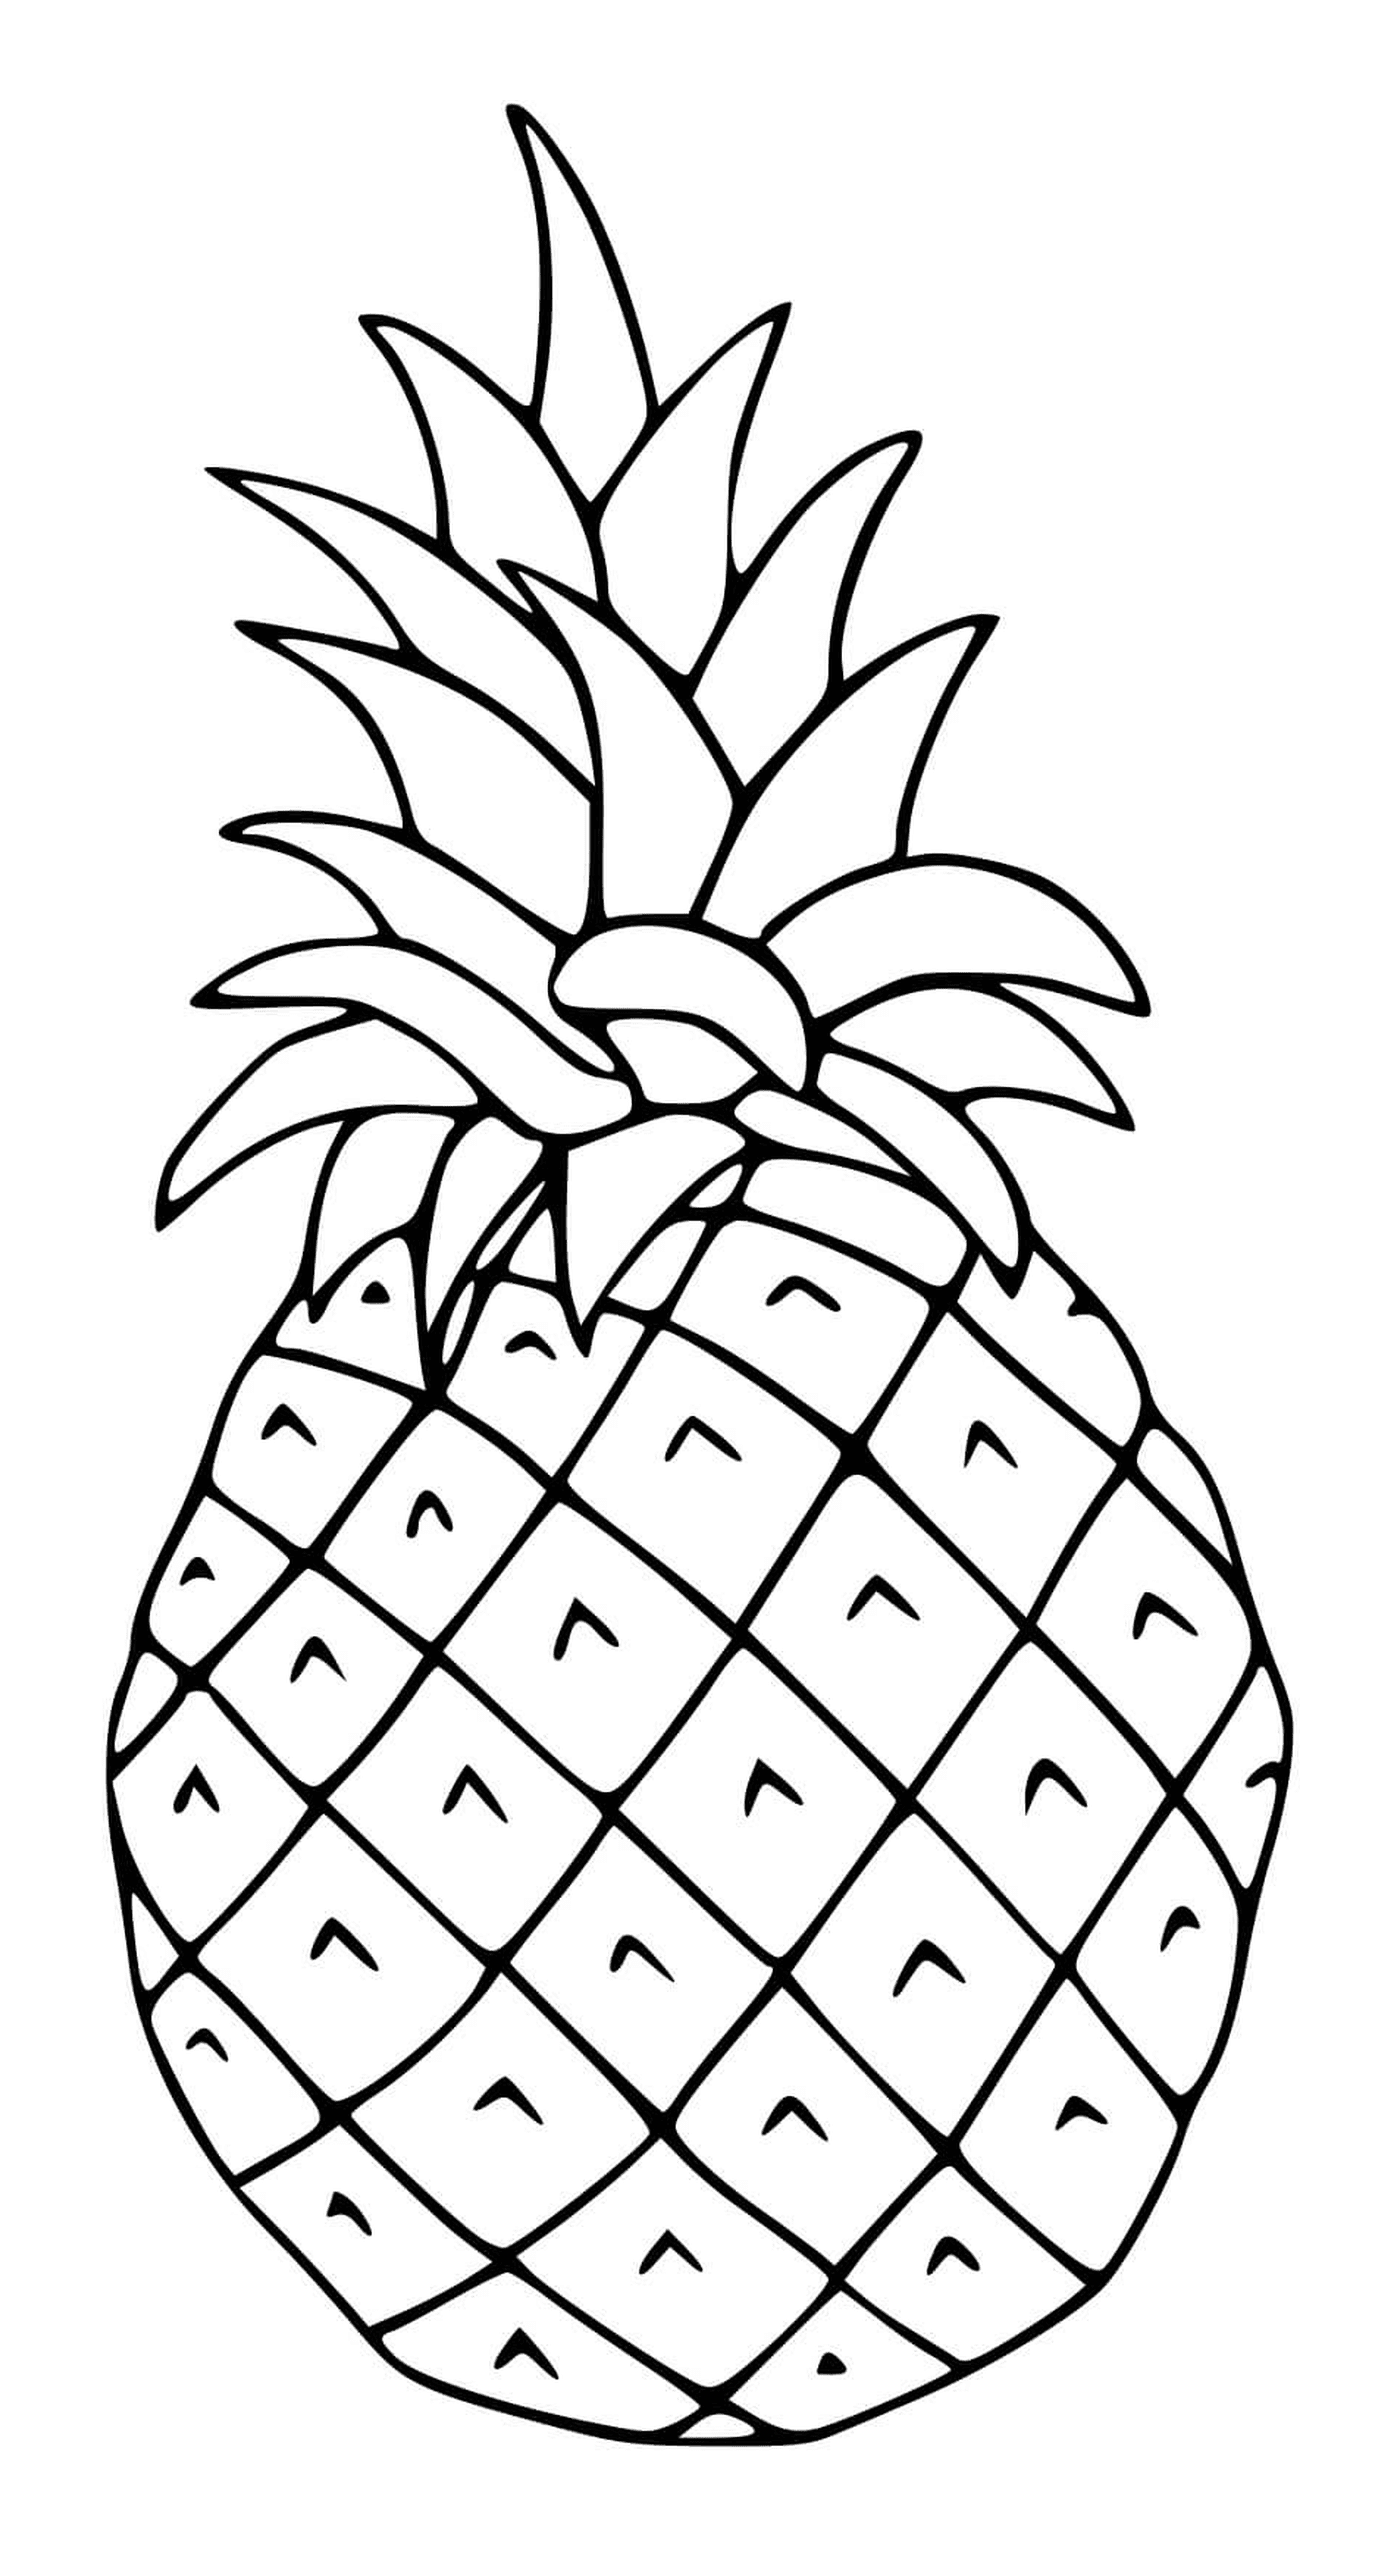  Un variopinto ananas alla frutta 